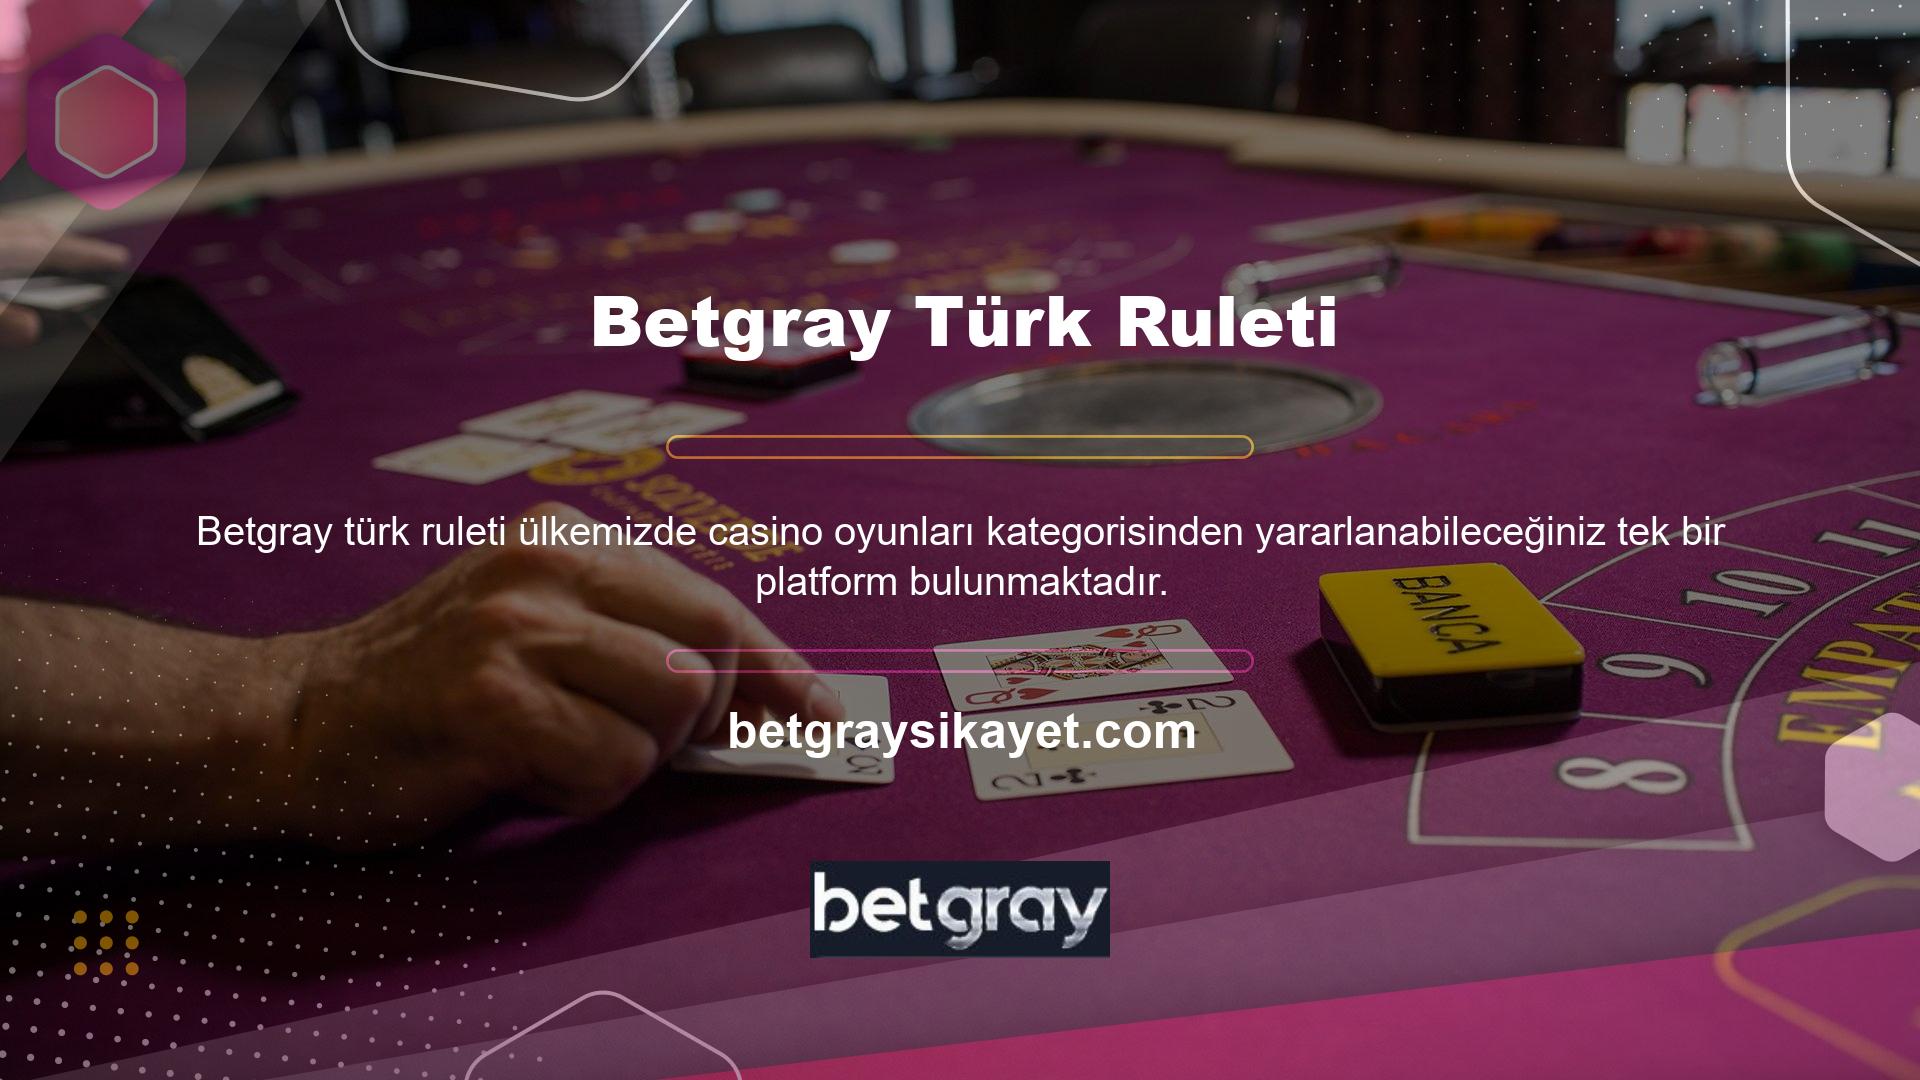 Online olarak bir casino sitesini ziyaret ettiğinizde Betgray sitesinin Türk bayilerle iş birliği içerisinde yer alan canlı casino oyunları kategorisinden yararlanma fırsatına sahip olabilirsiniz